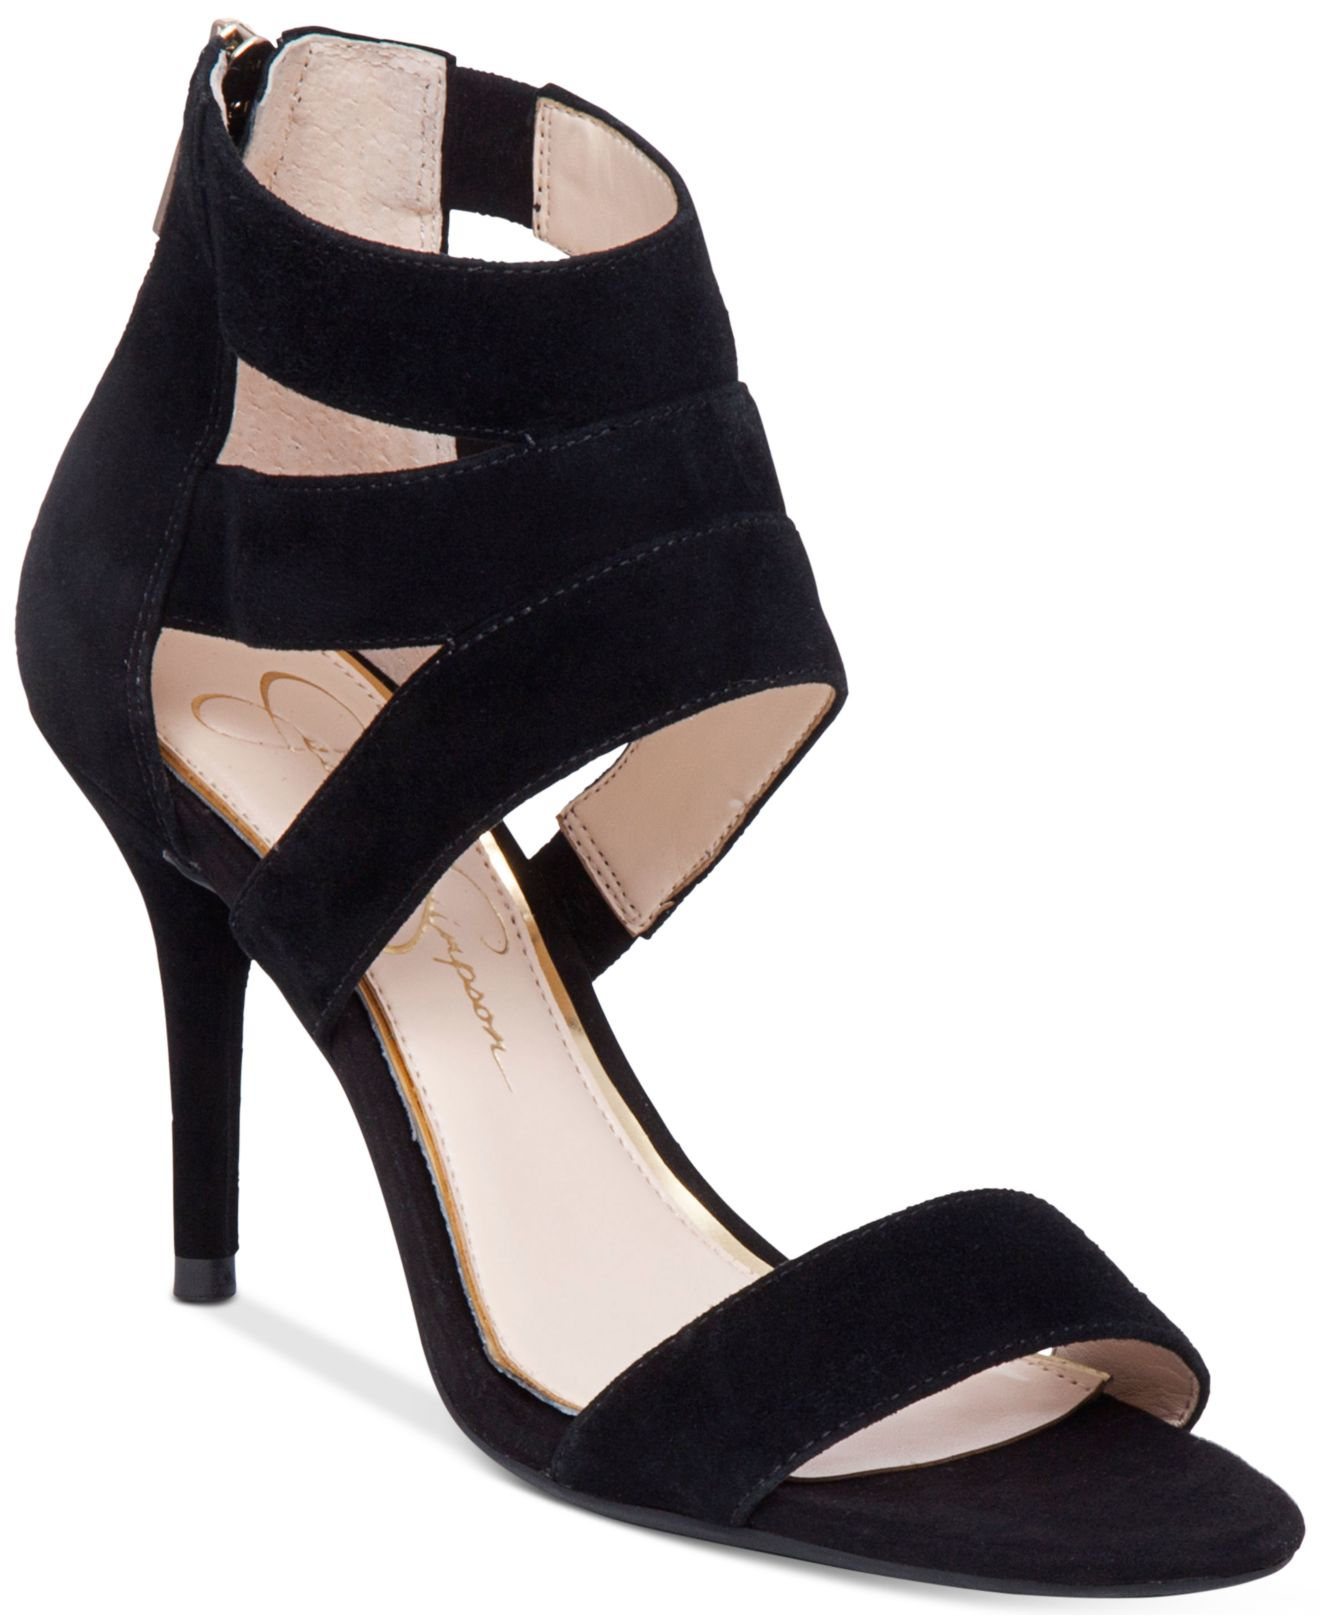 Lyst - Jessica Simpson Marlen Dress Sandals in Black